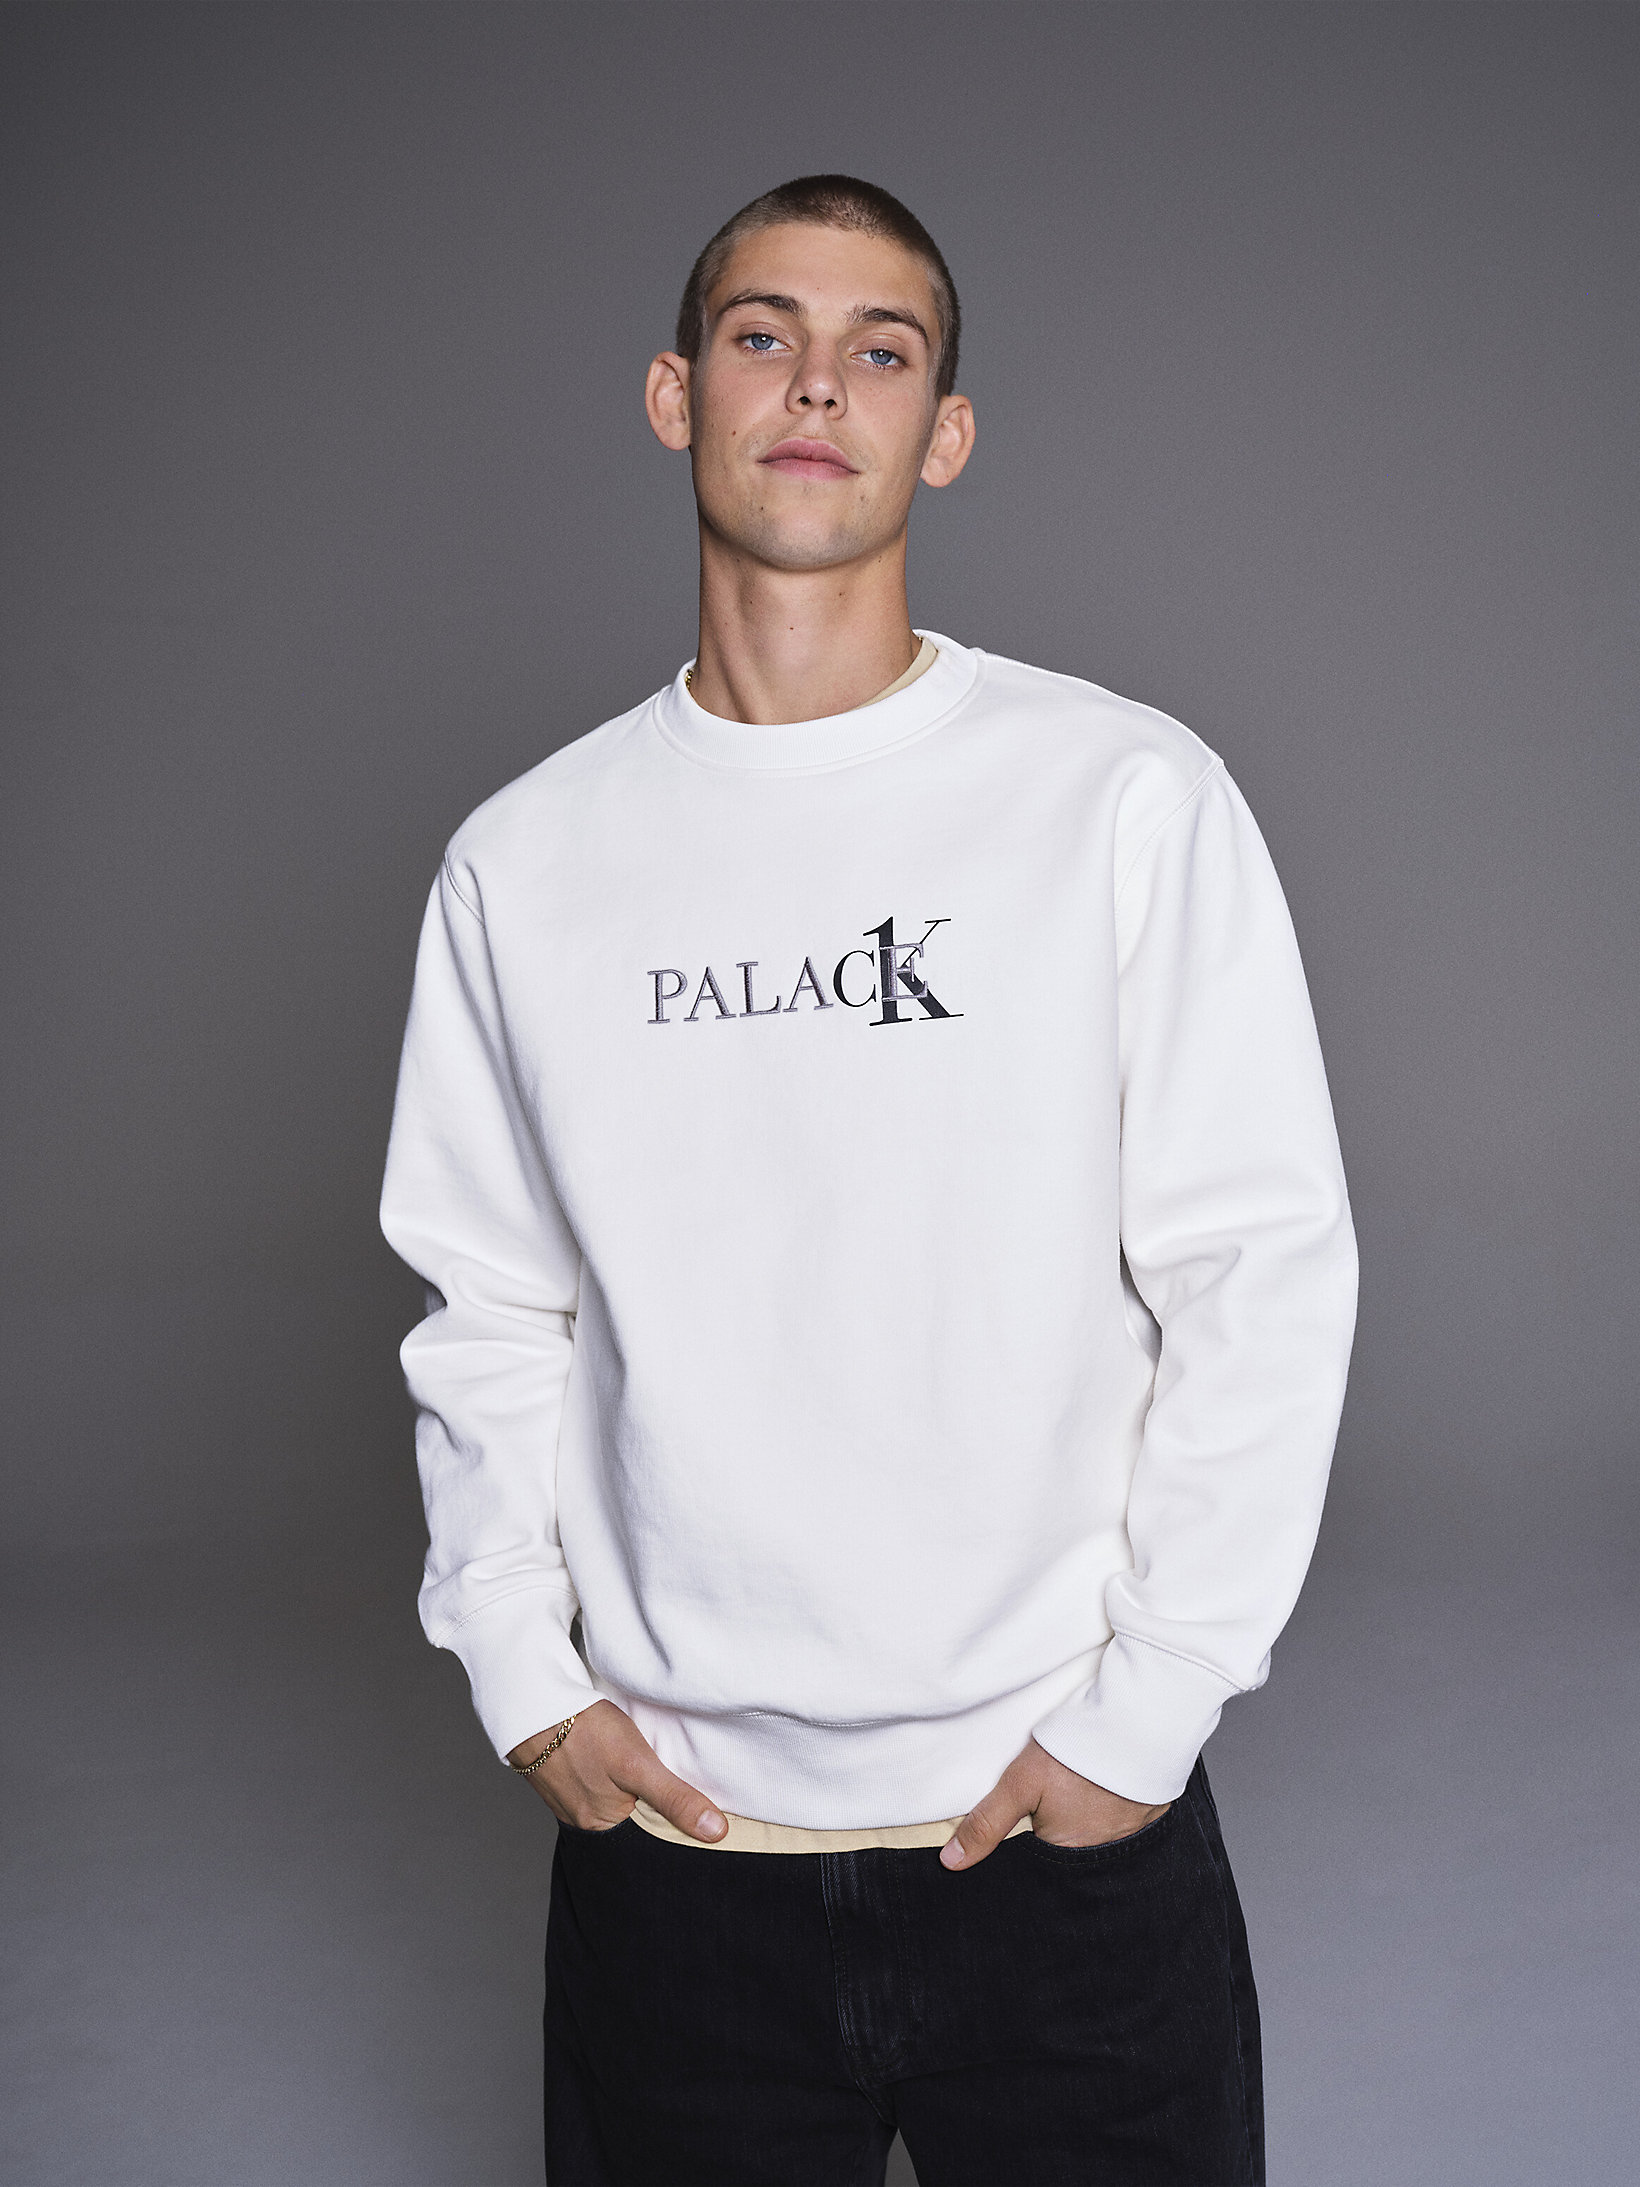 Mサイズ CK1 Palace クルーネック スウェットシャツ Calvin Klein 